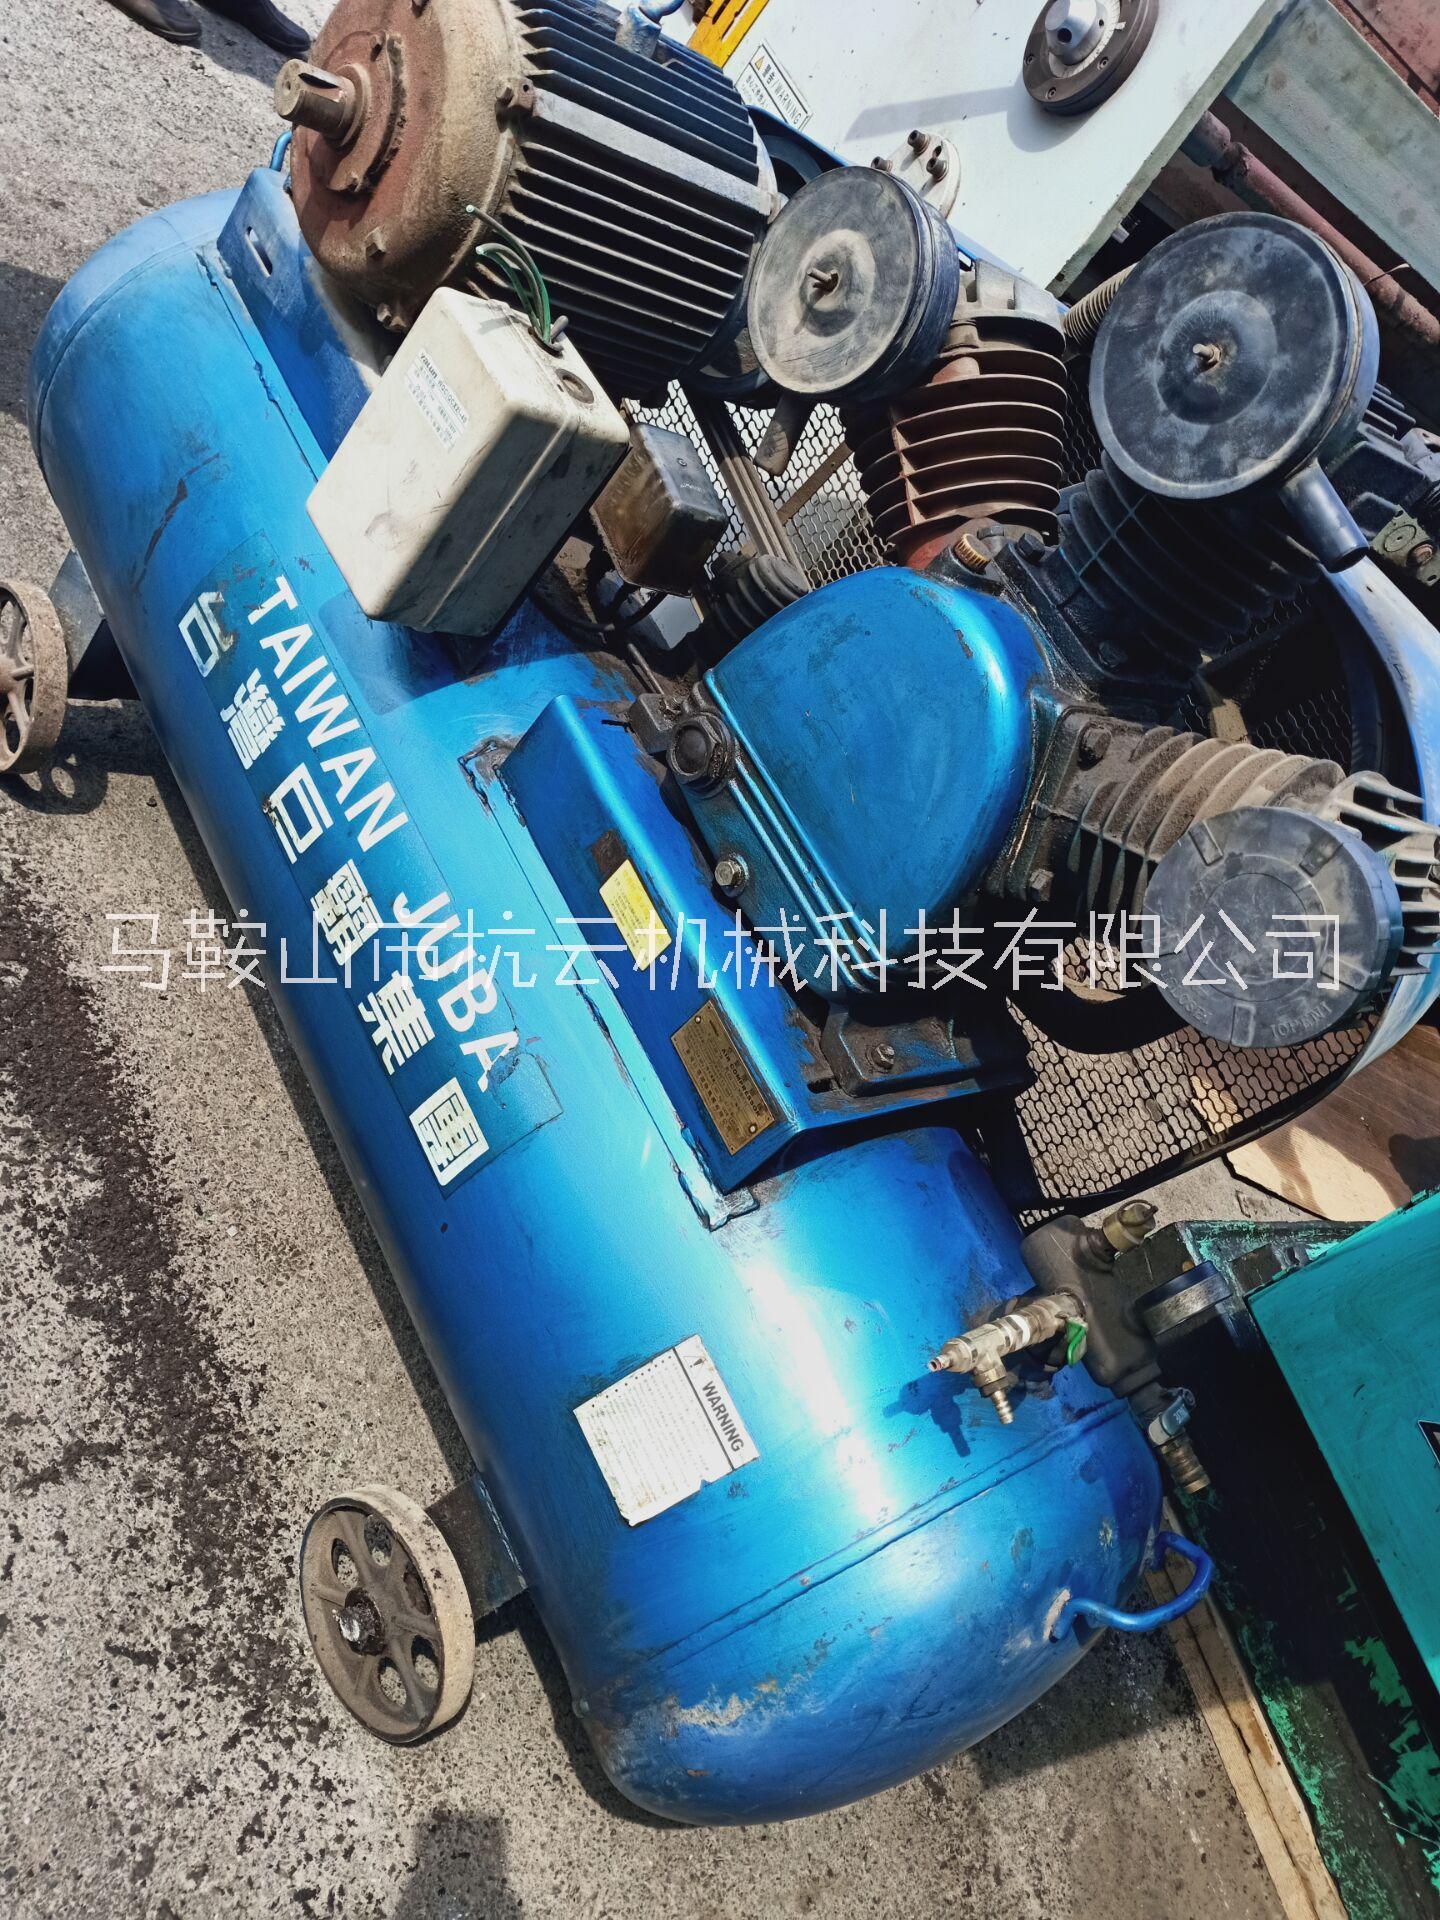 台湾巨霸空压机 二手 合肥二手机床 安徽长江机床合肥办事处图片